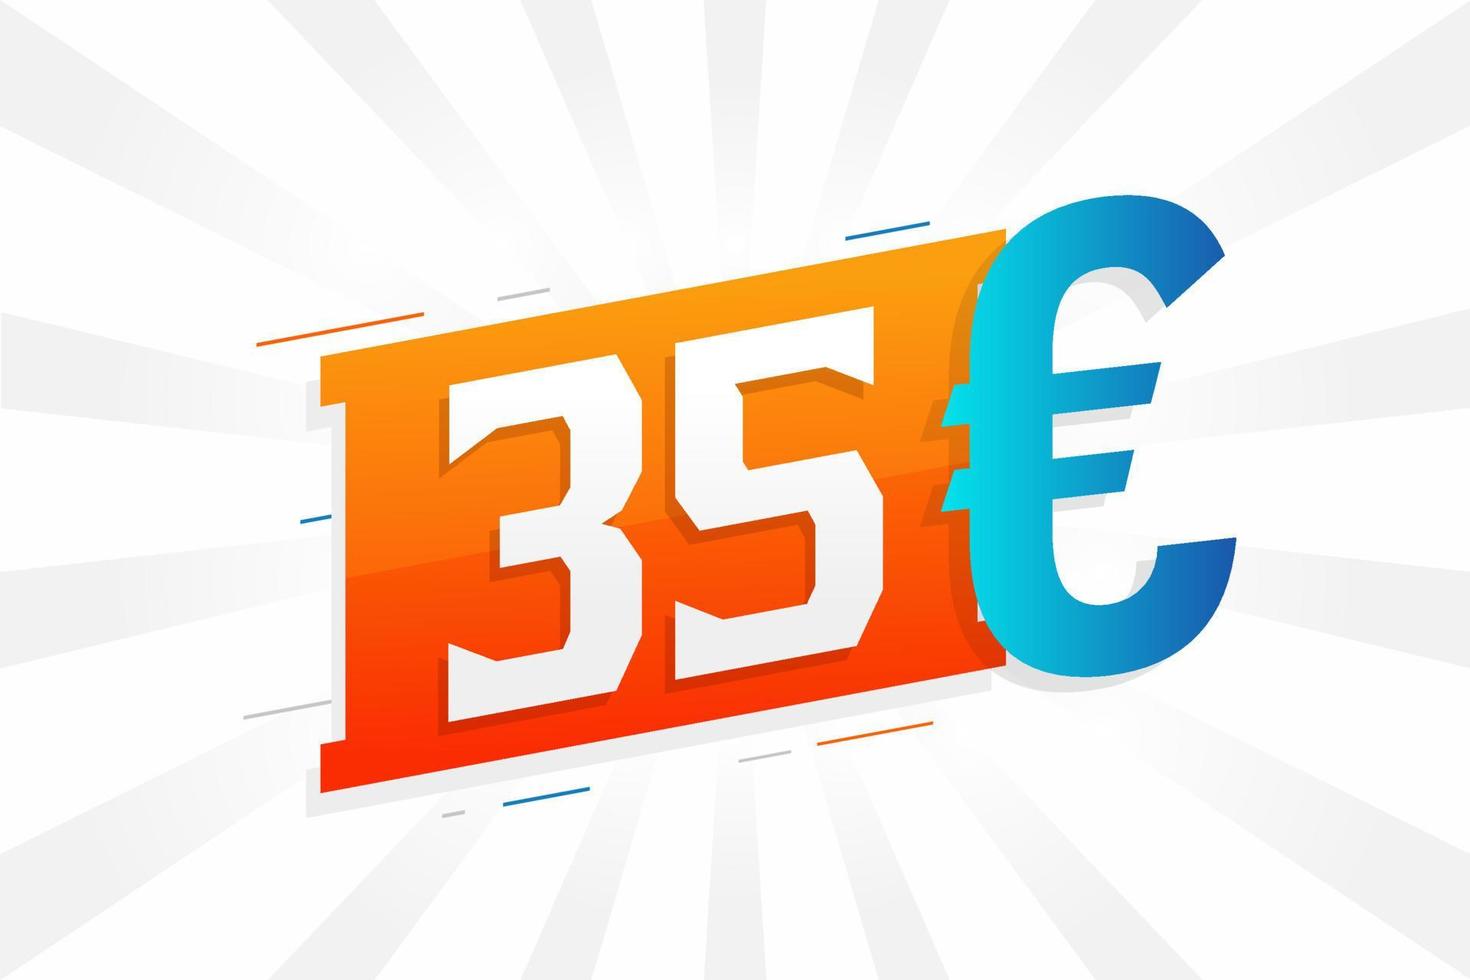 35 Euro Currency vector text symbol. 35 Euro European Union Money stock vector